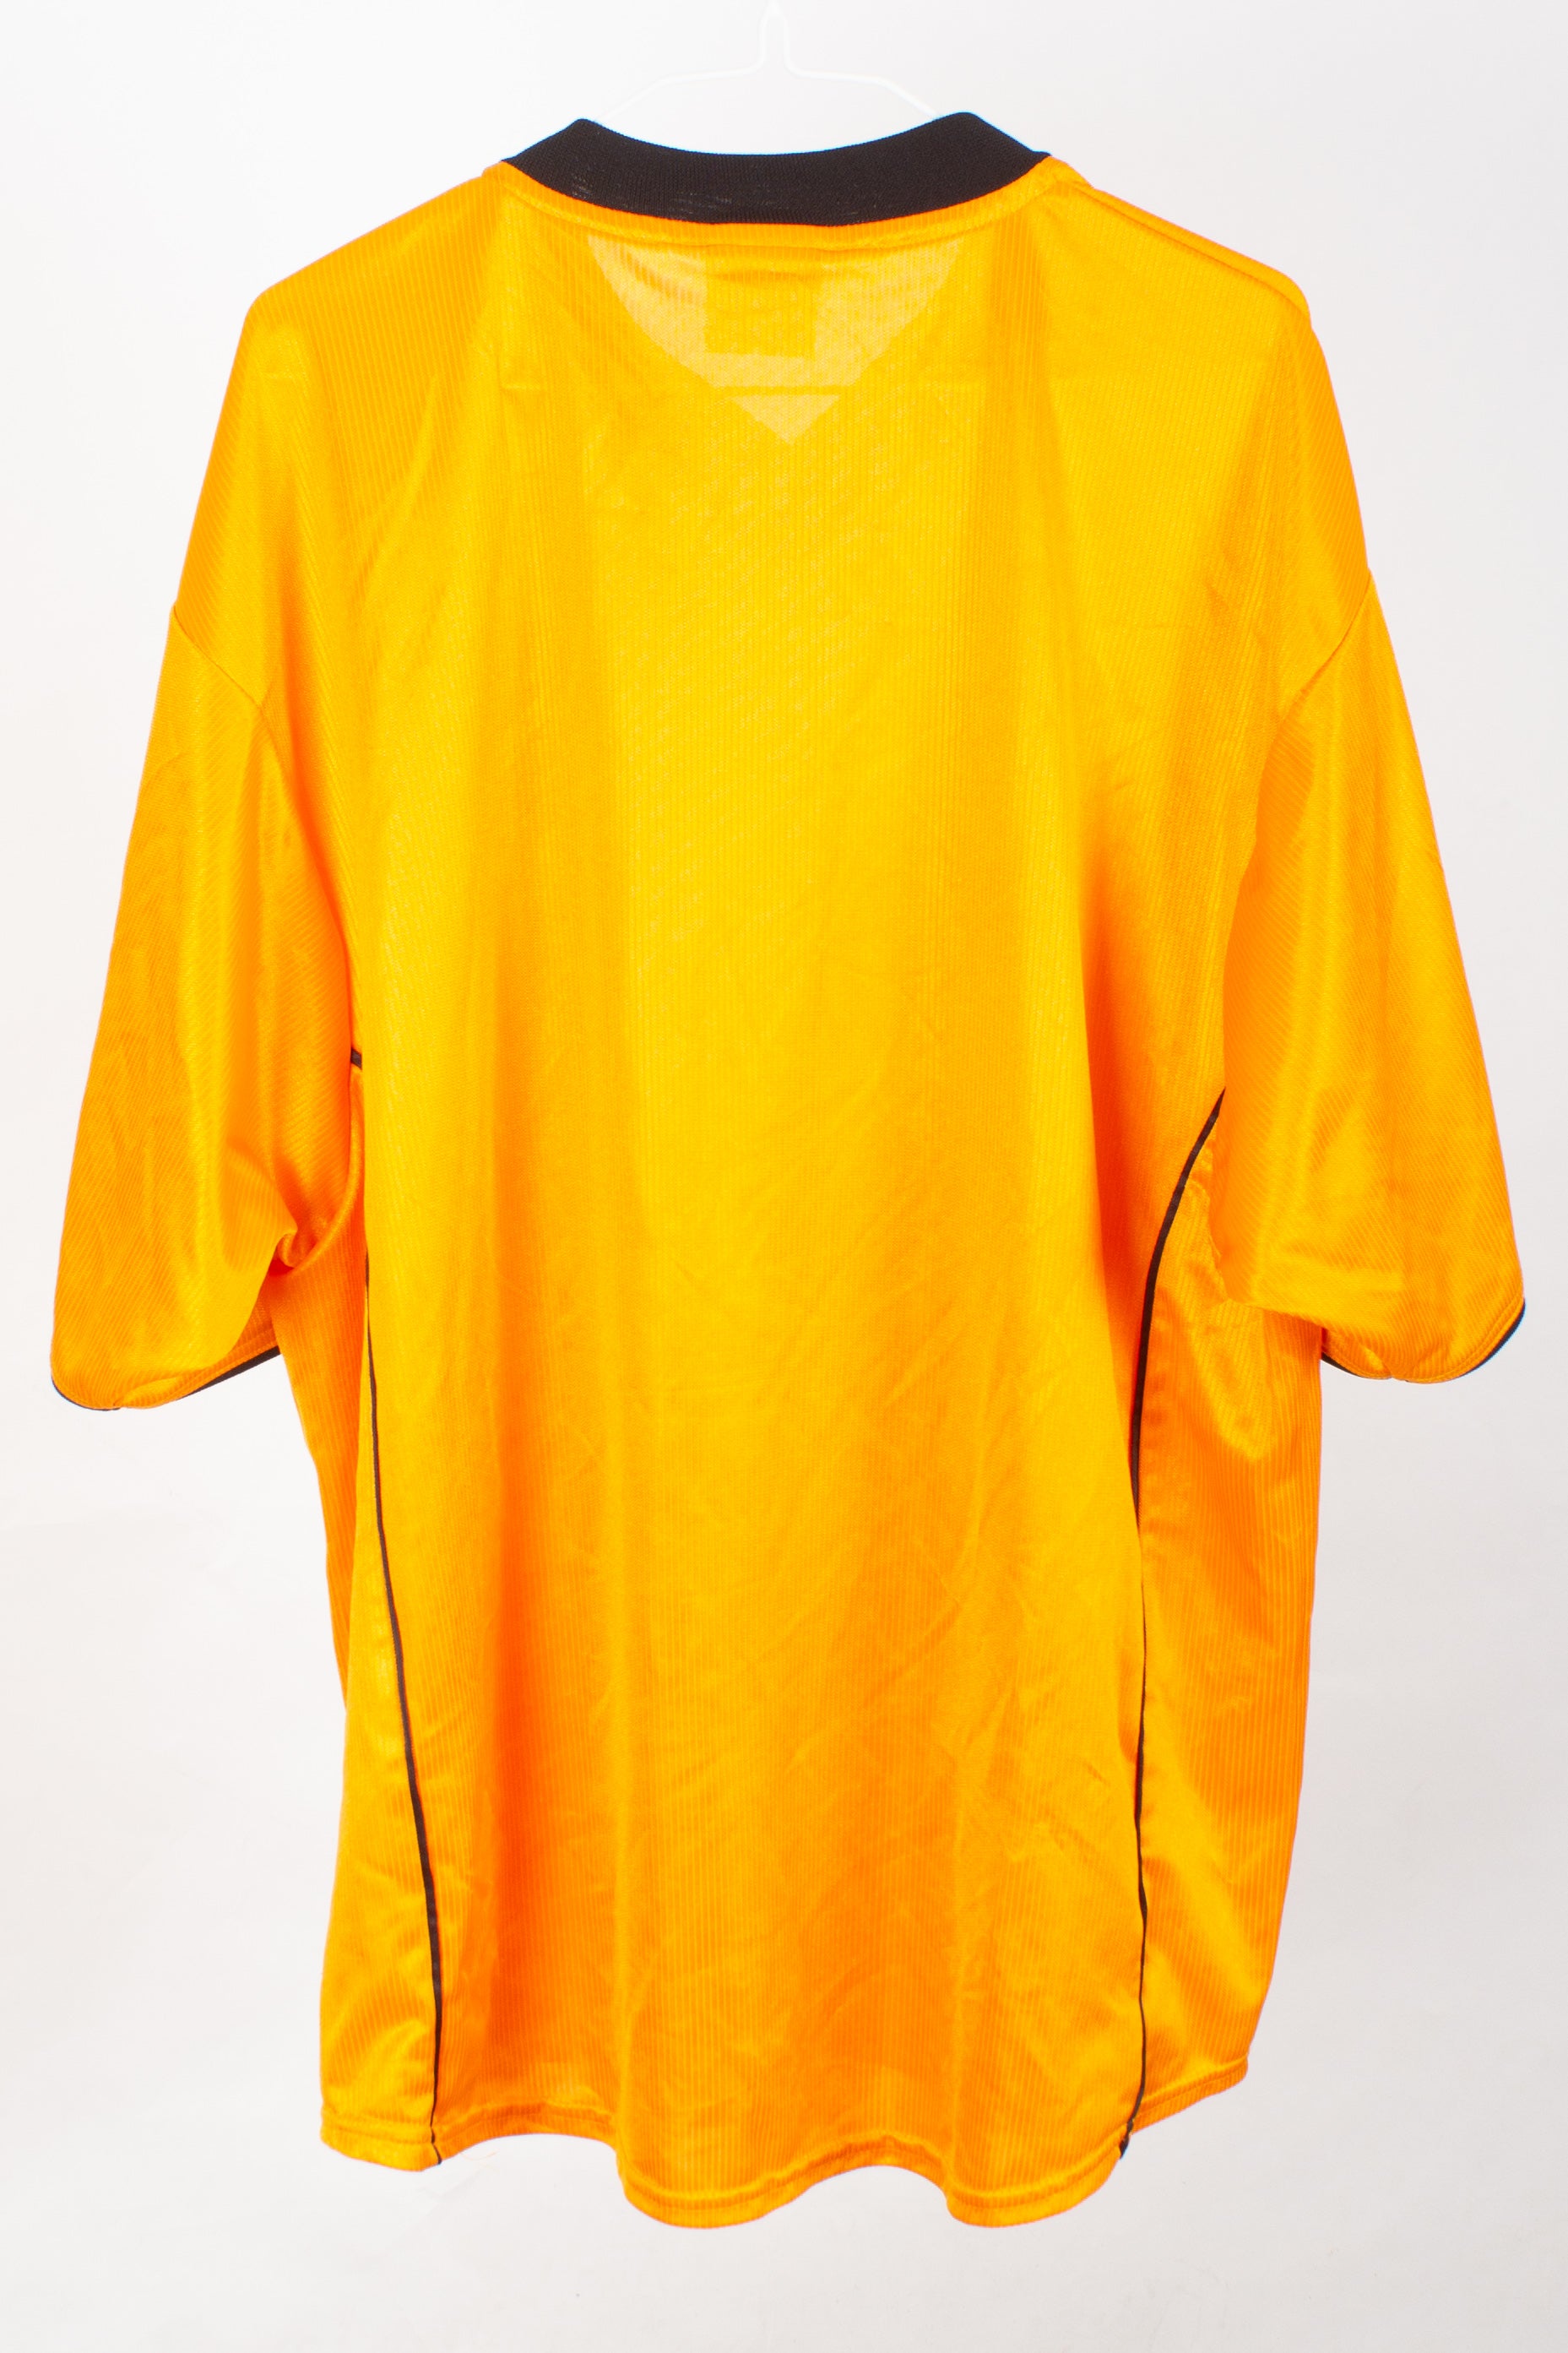 Hull City 2001/02 Home Shirt (XL)